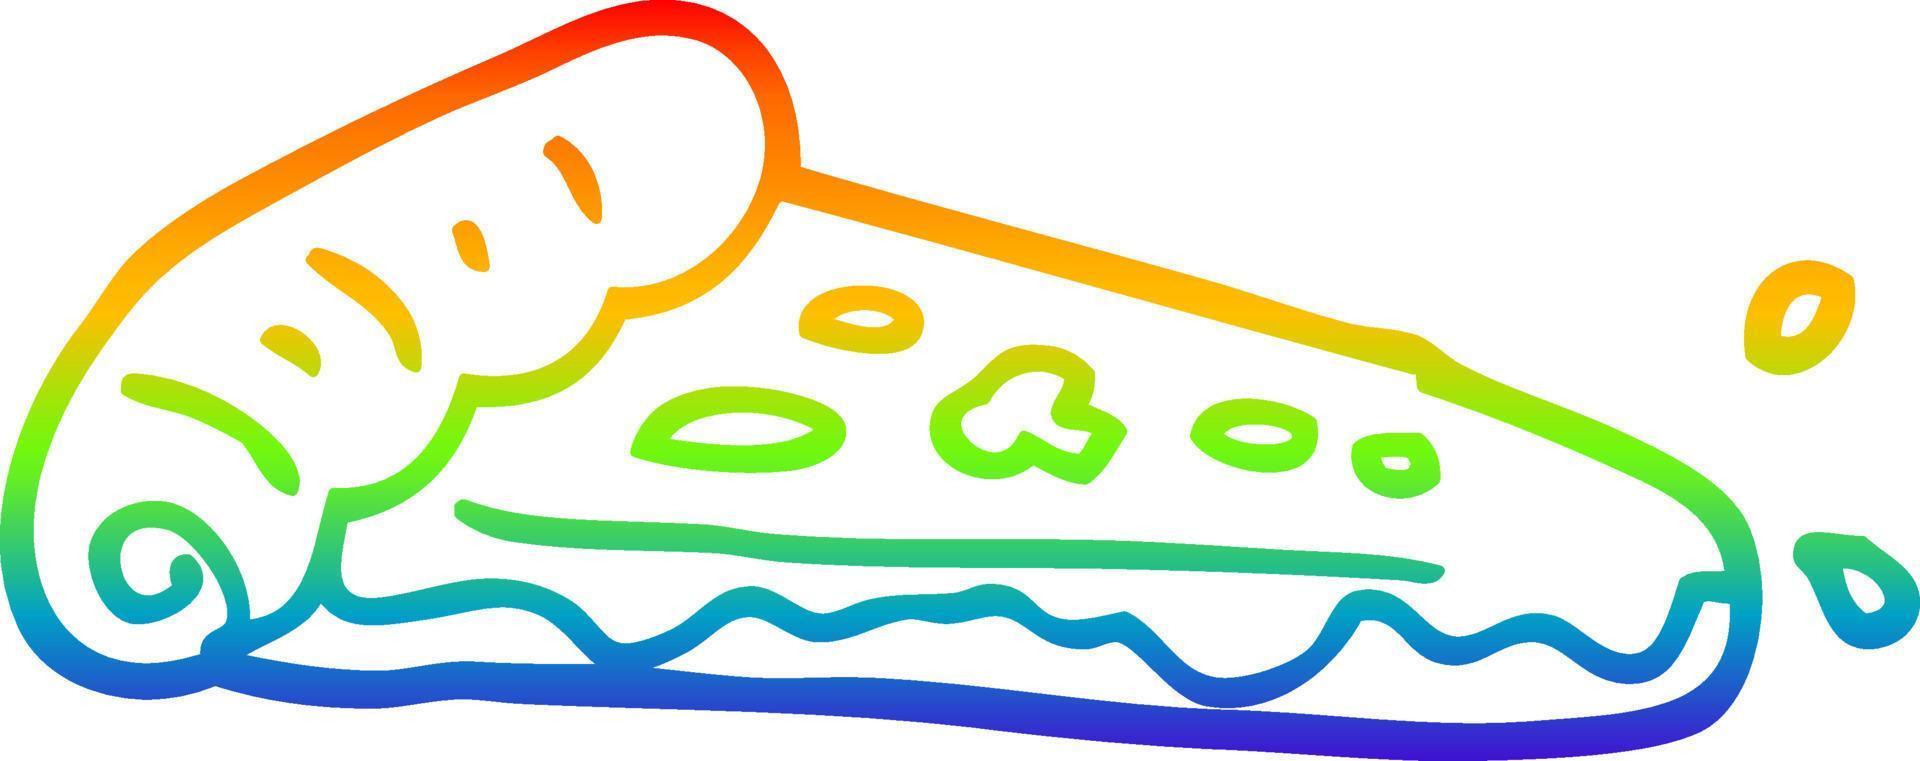 rebanada de pizza de dibujos animados de dibujo de línea de gradiente de arco iris vector